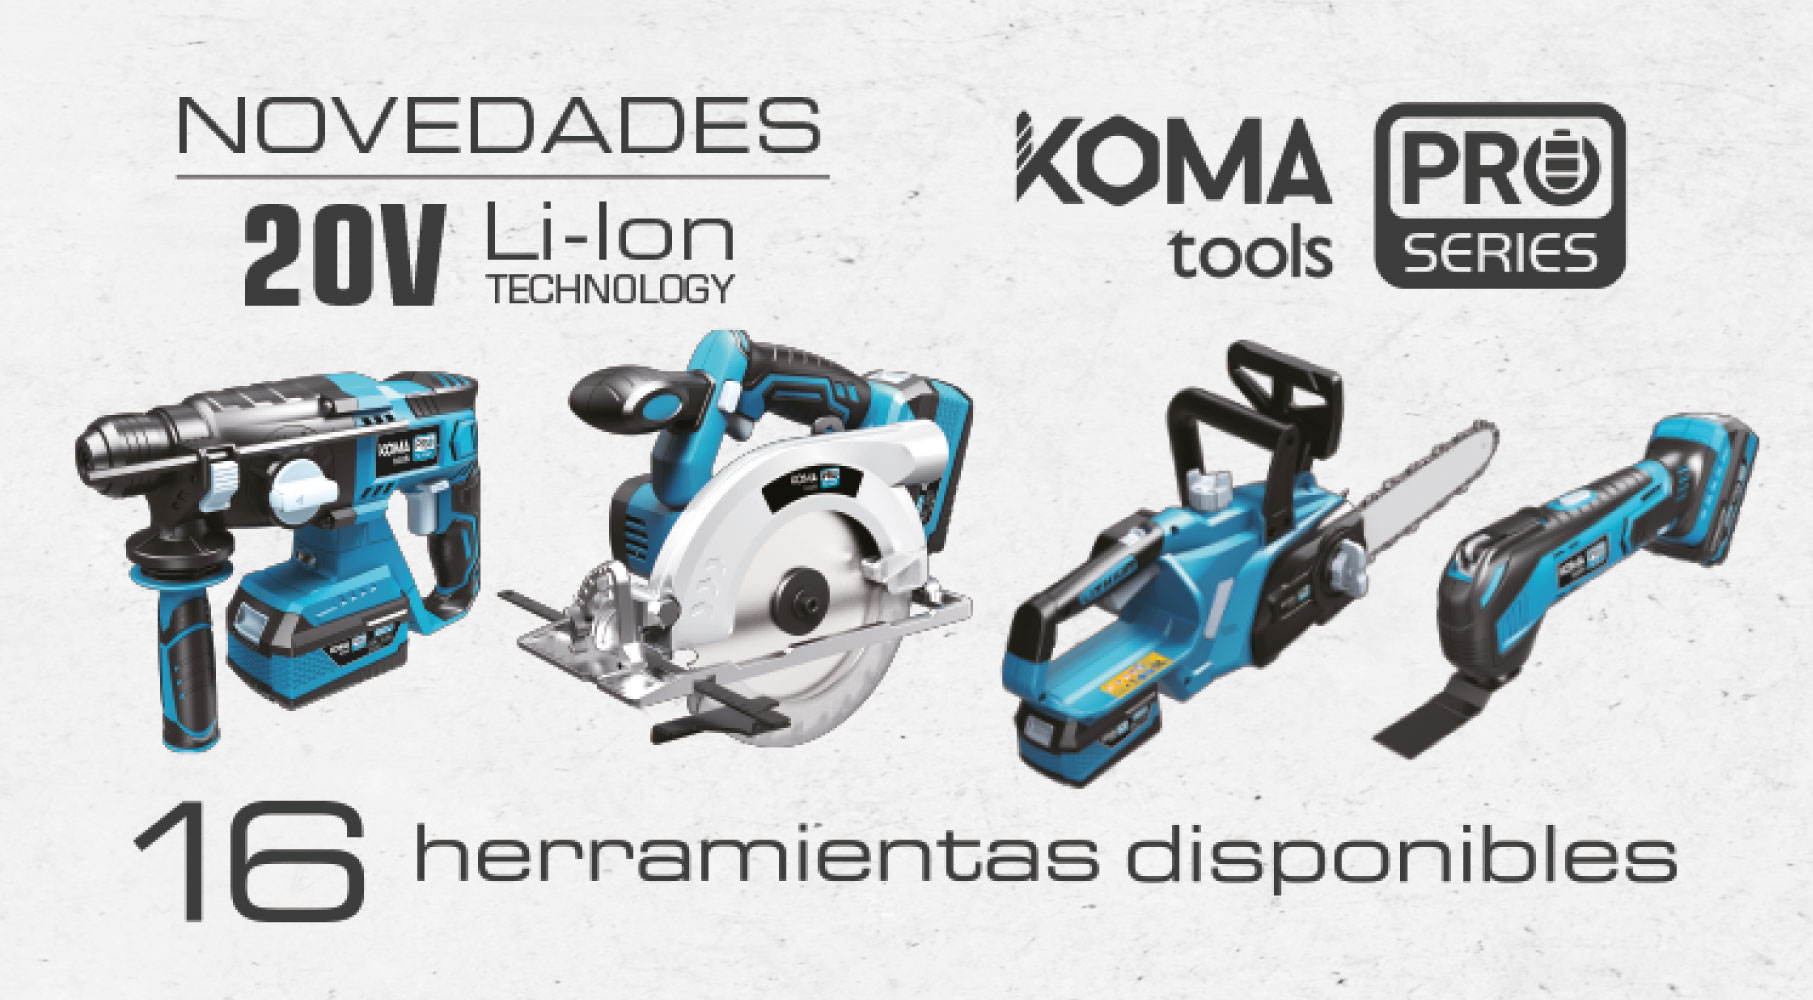  Ampliació de la gamma d'eines professionals Koma Tools Pro